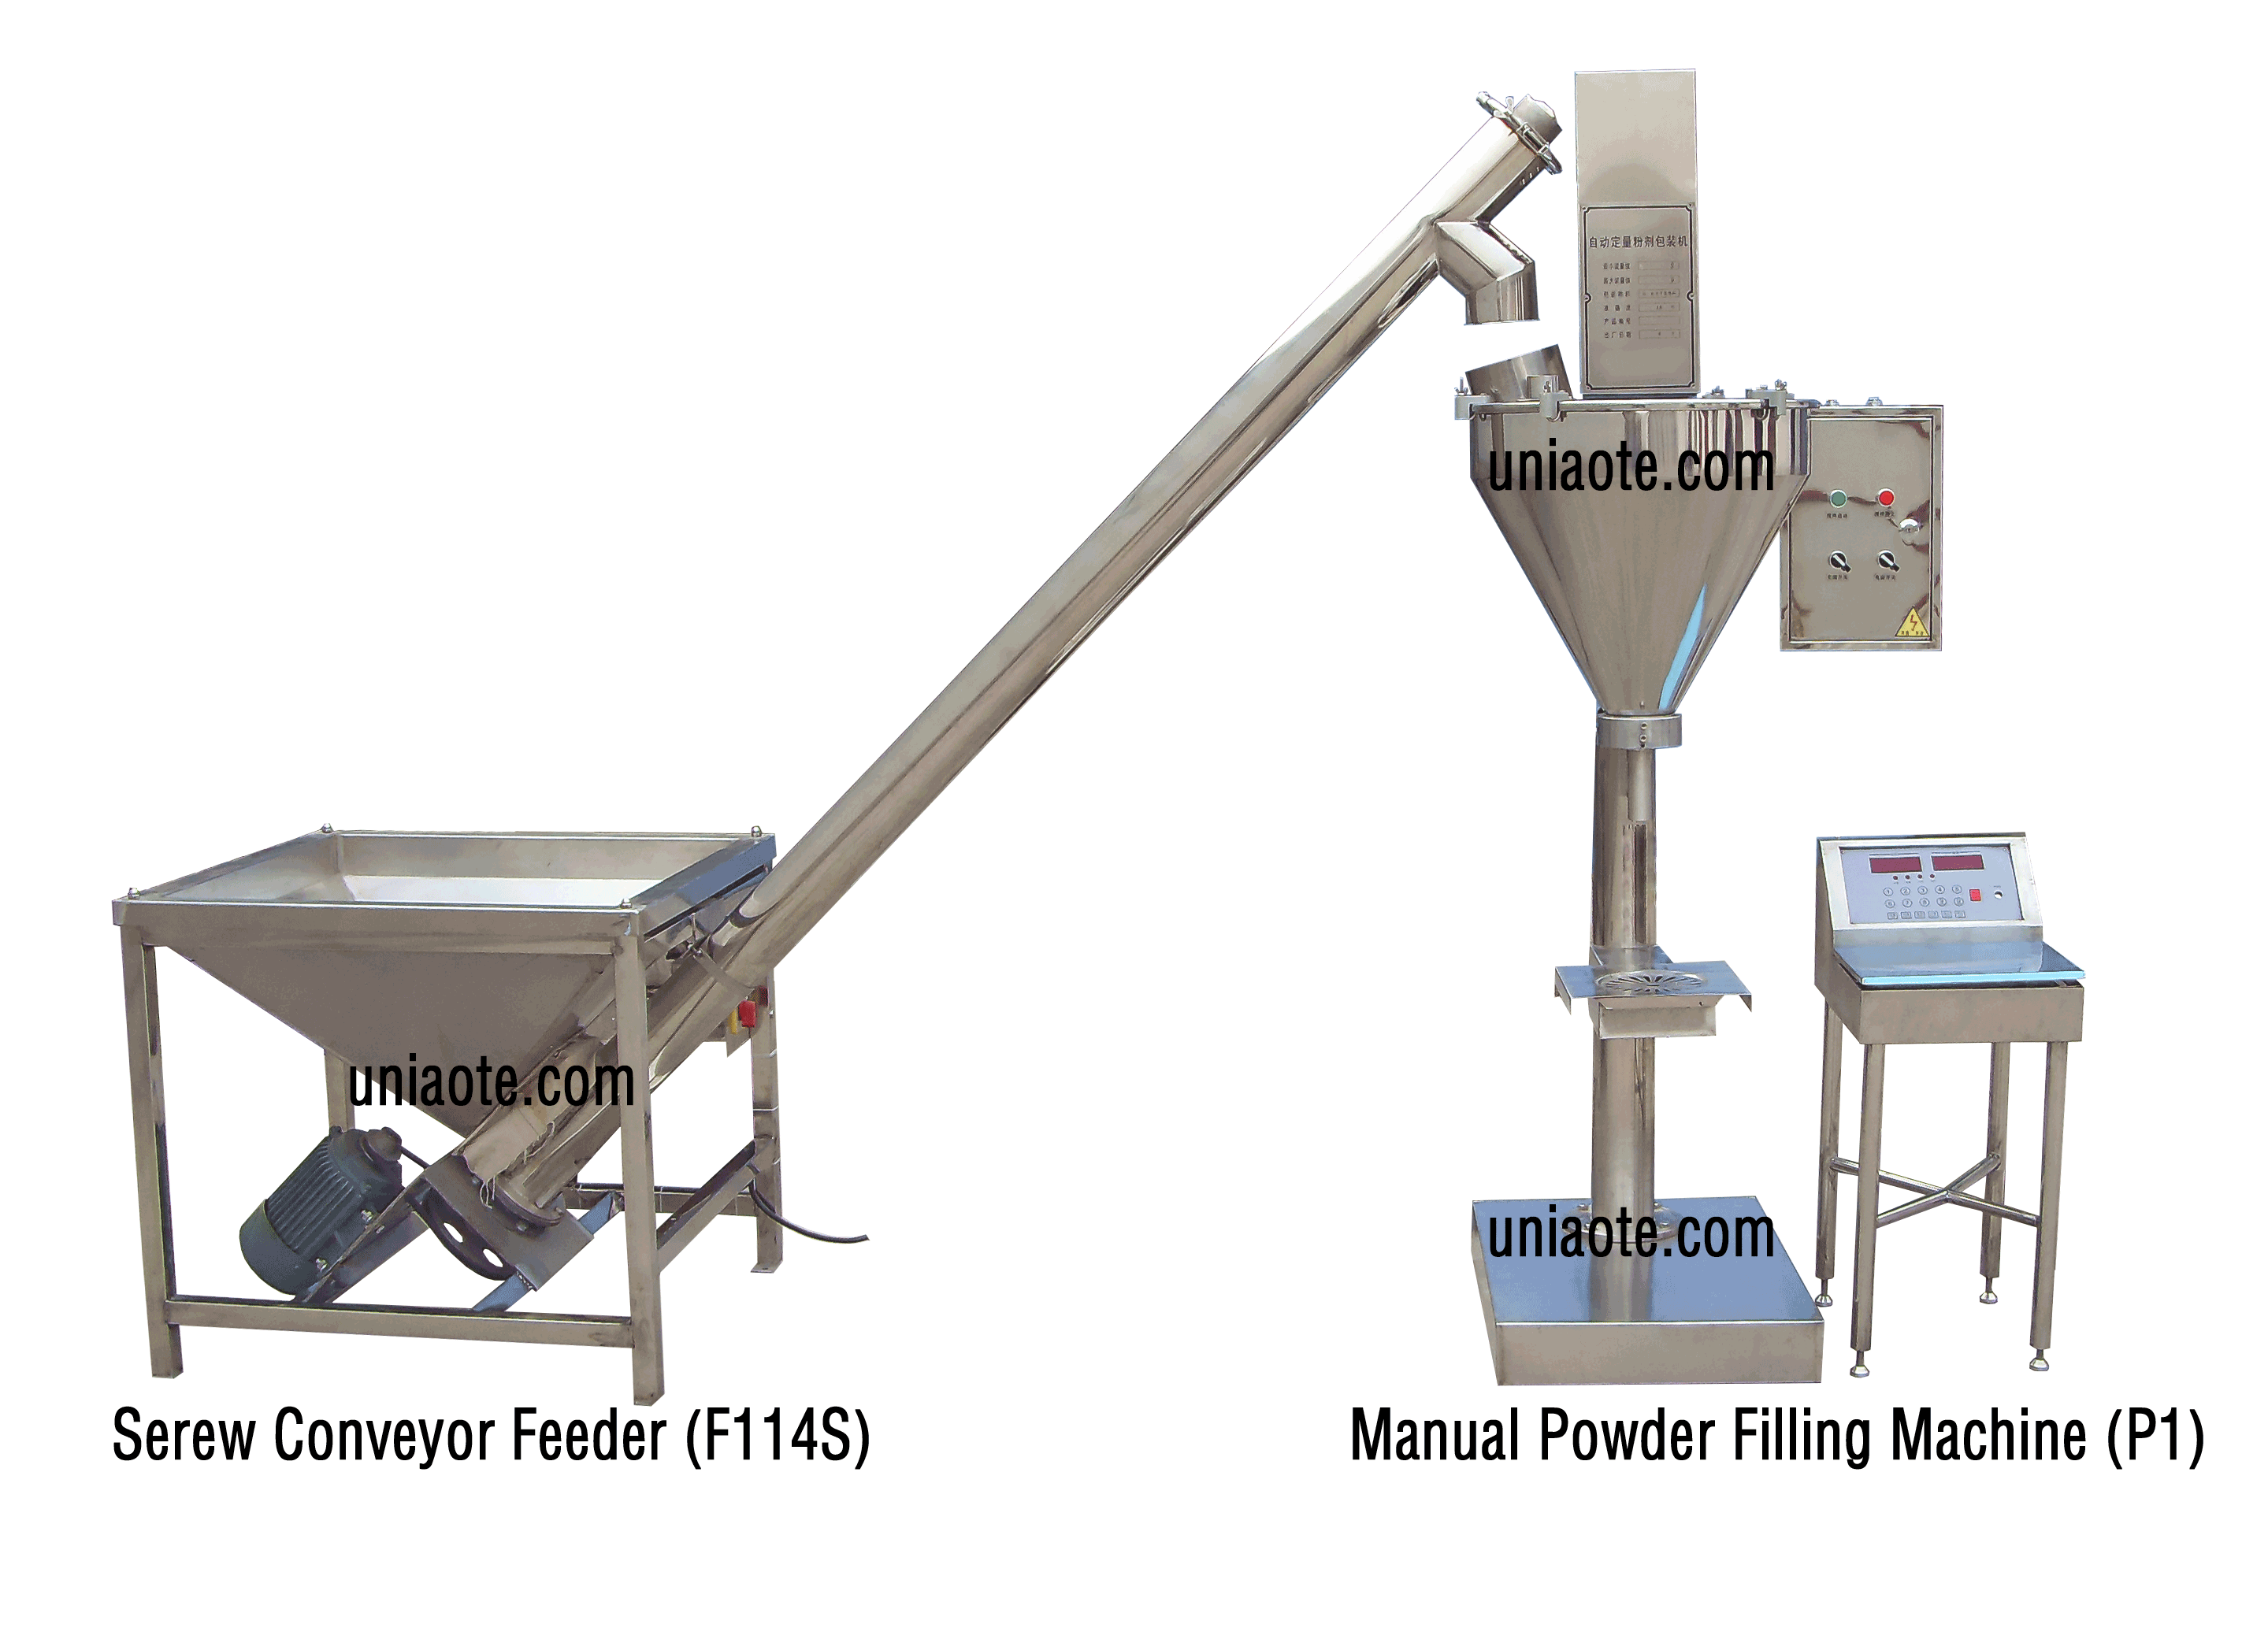 Manual Powder Filling Machine (Image)